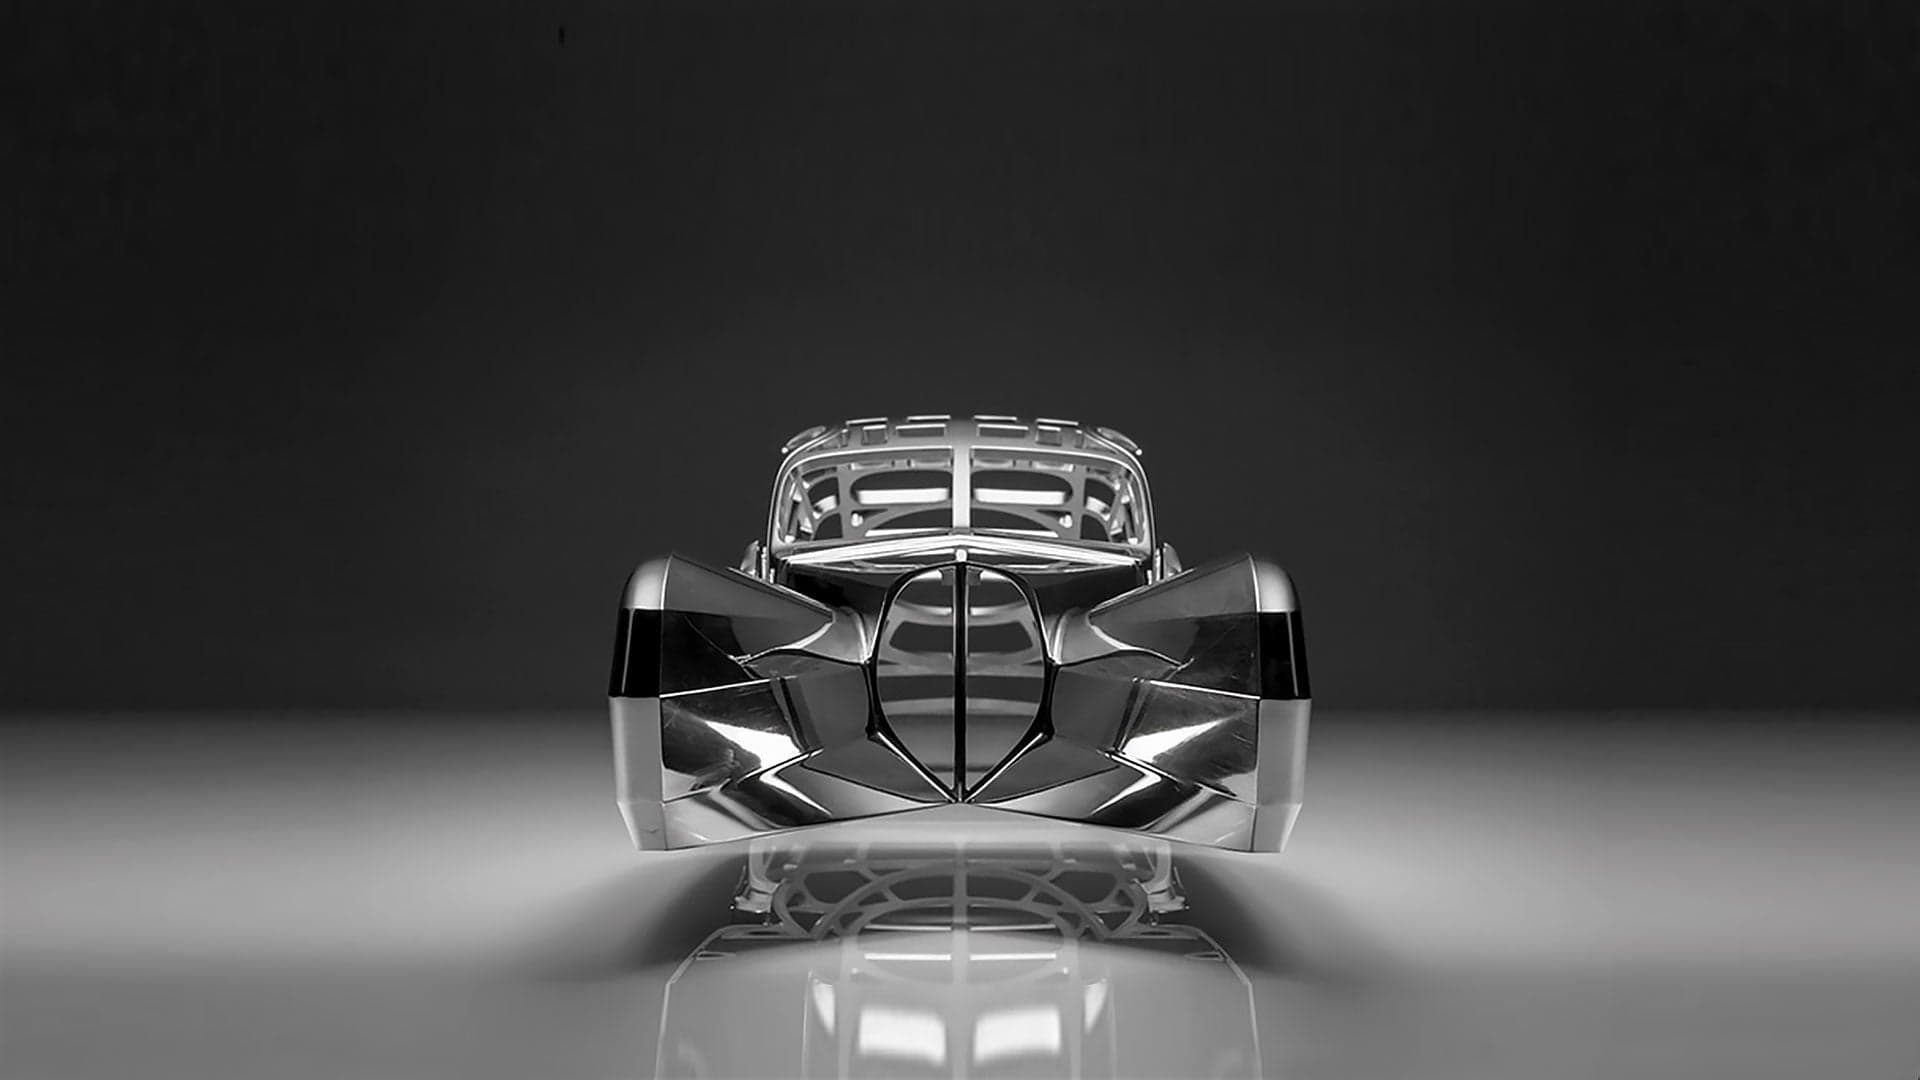 Block of Aluminum Transformed Into Bugatti Masterpiece